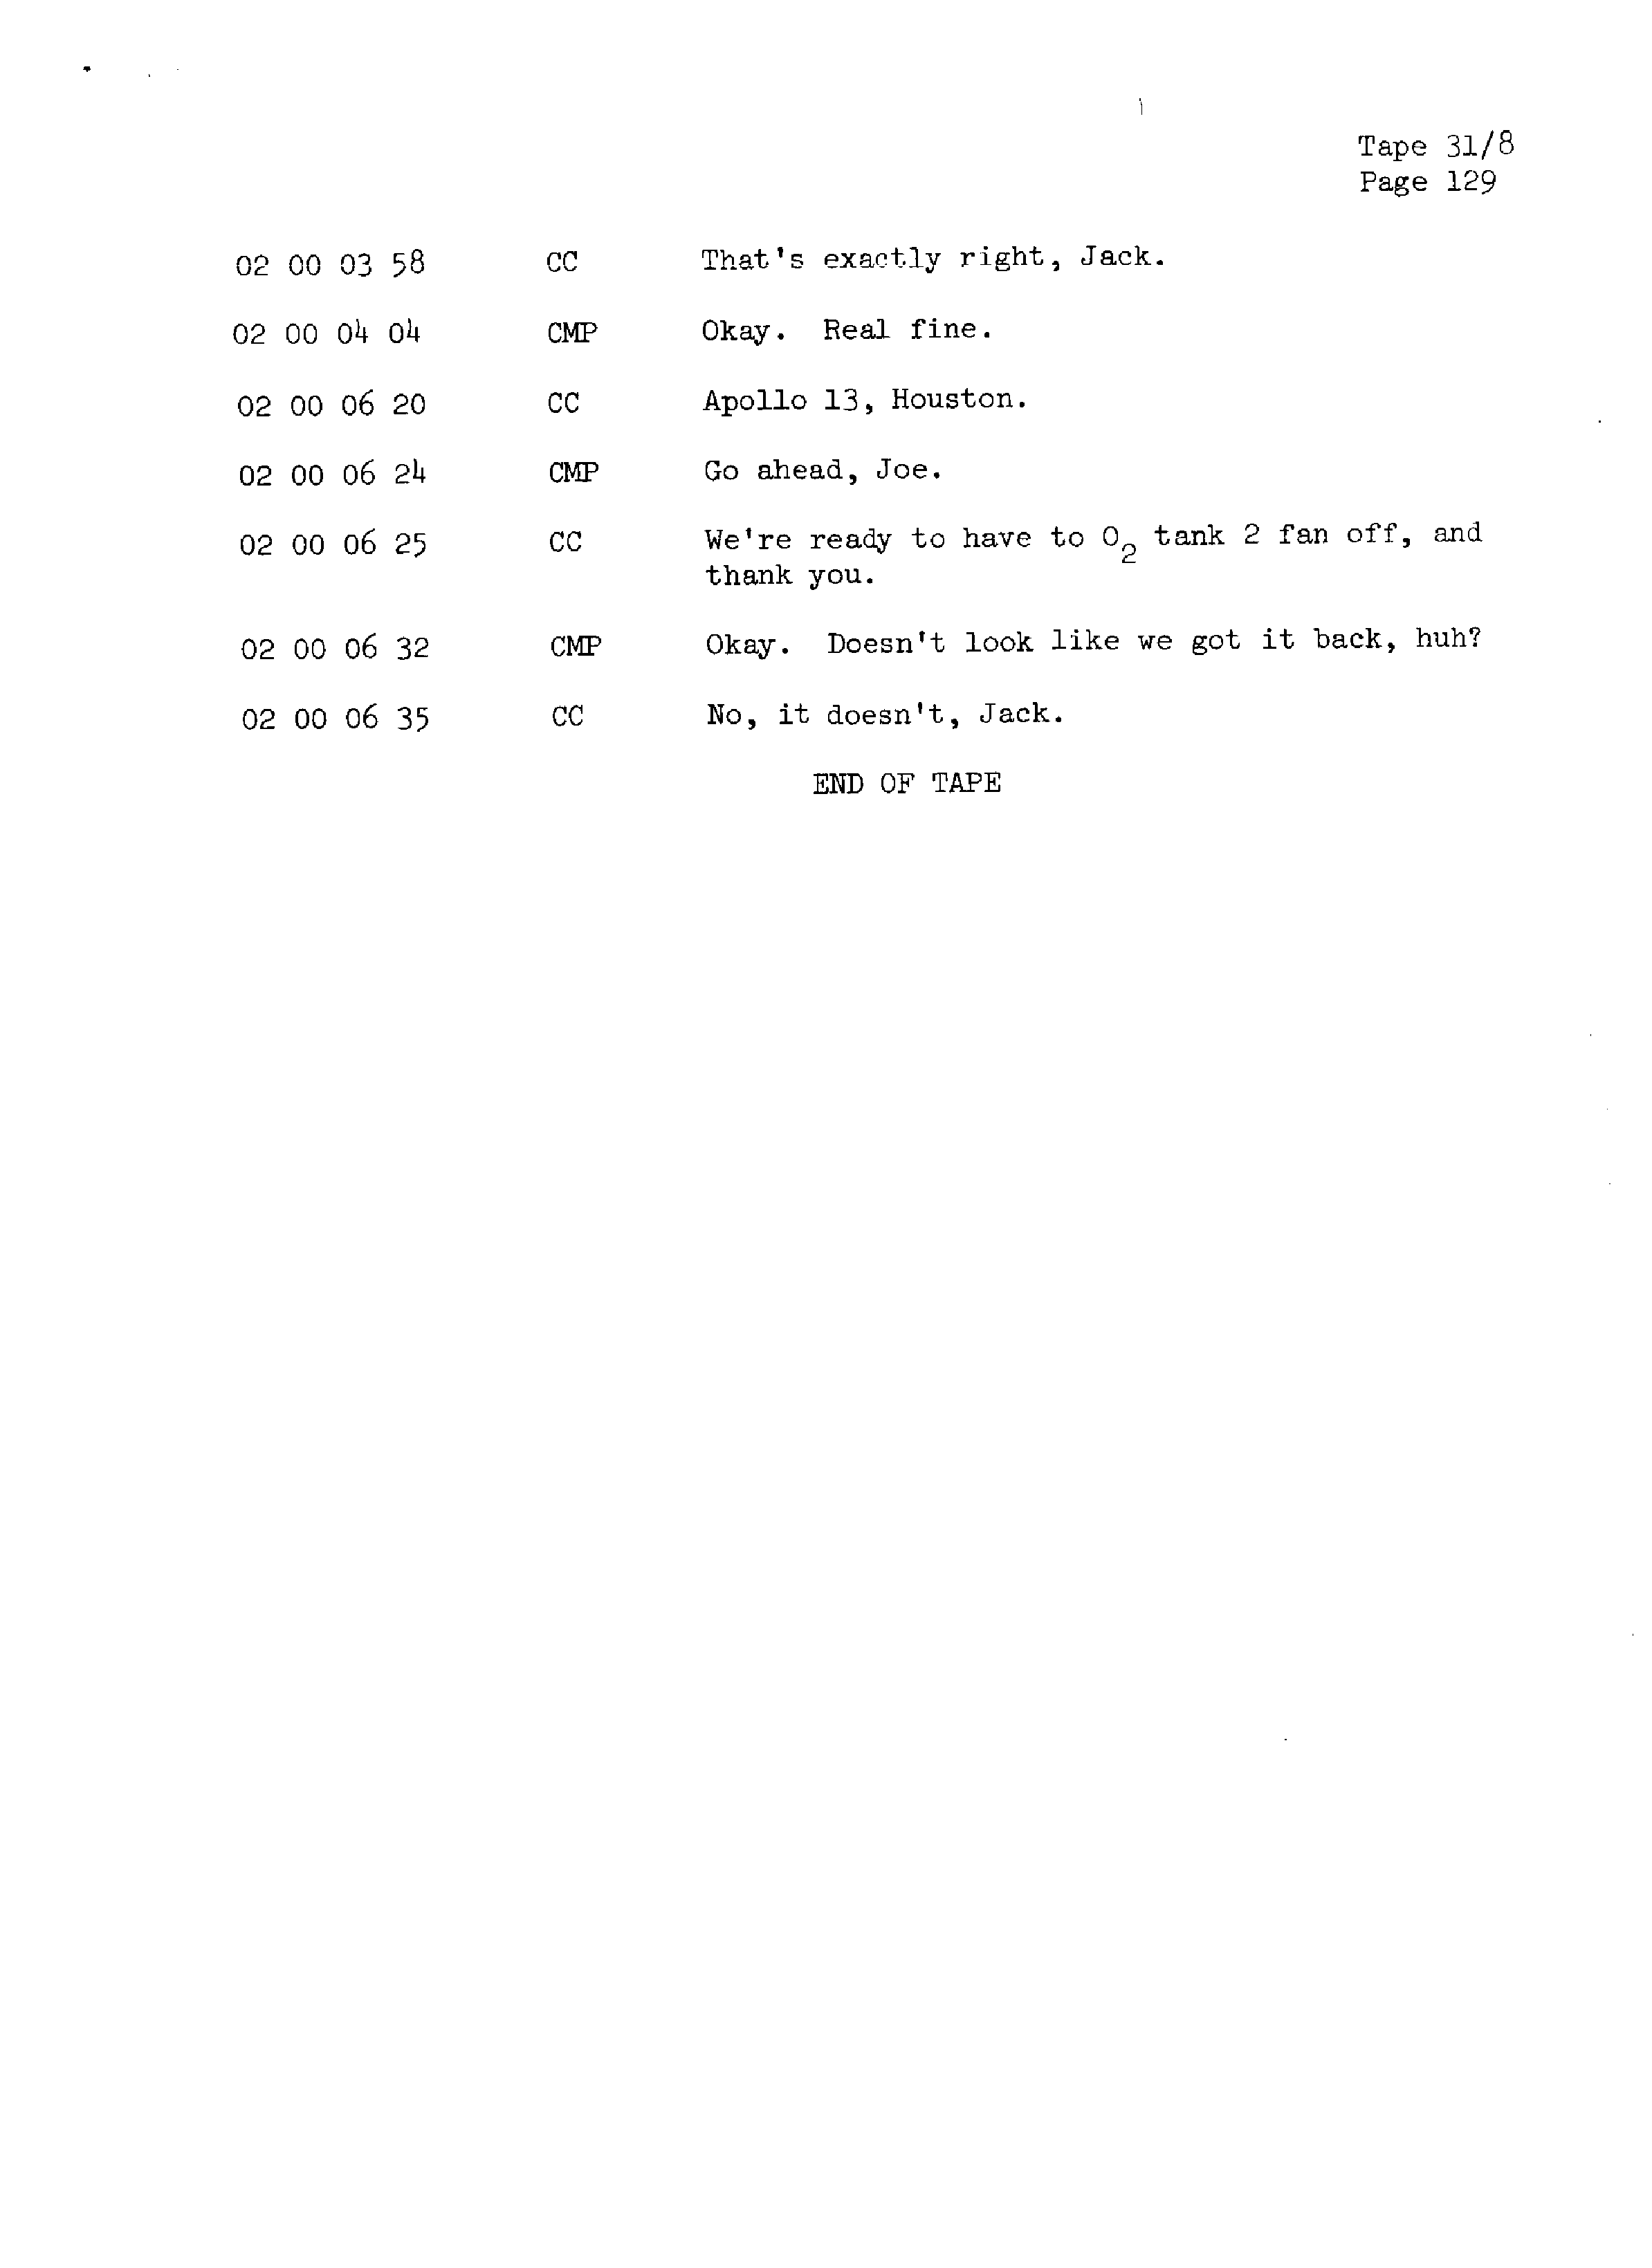 Page 136 of Apollo 13’s original transcript